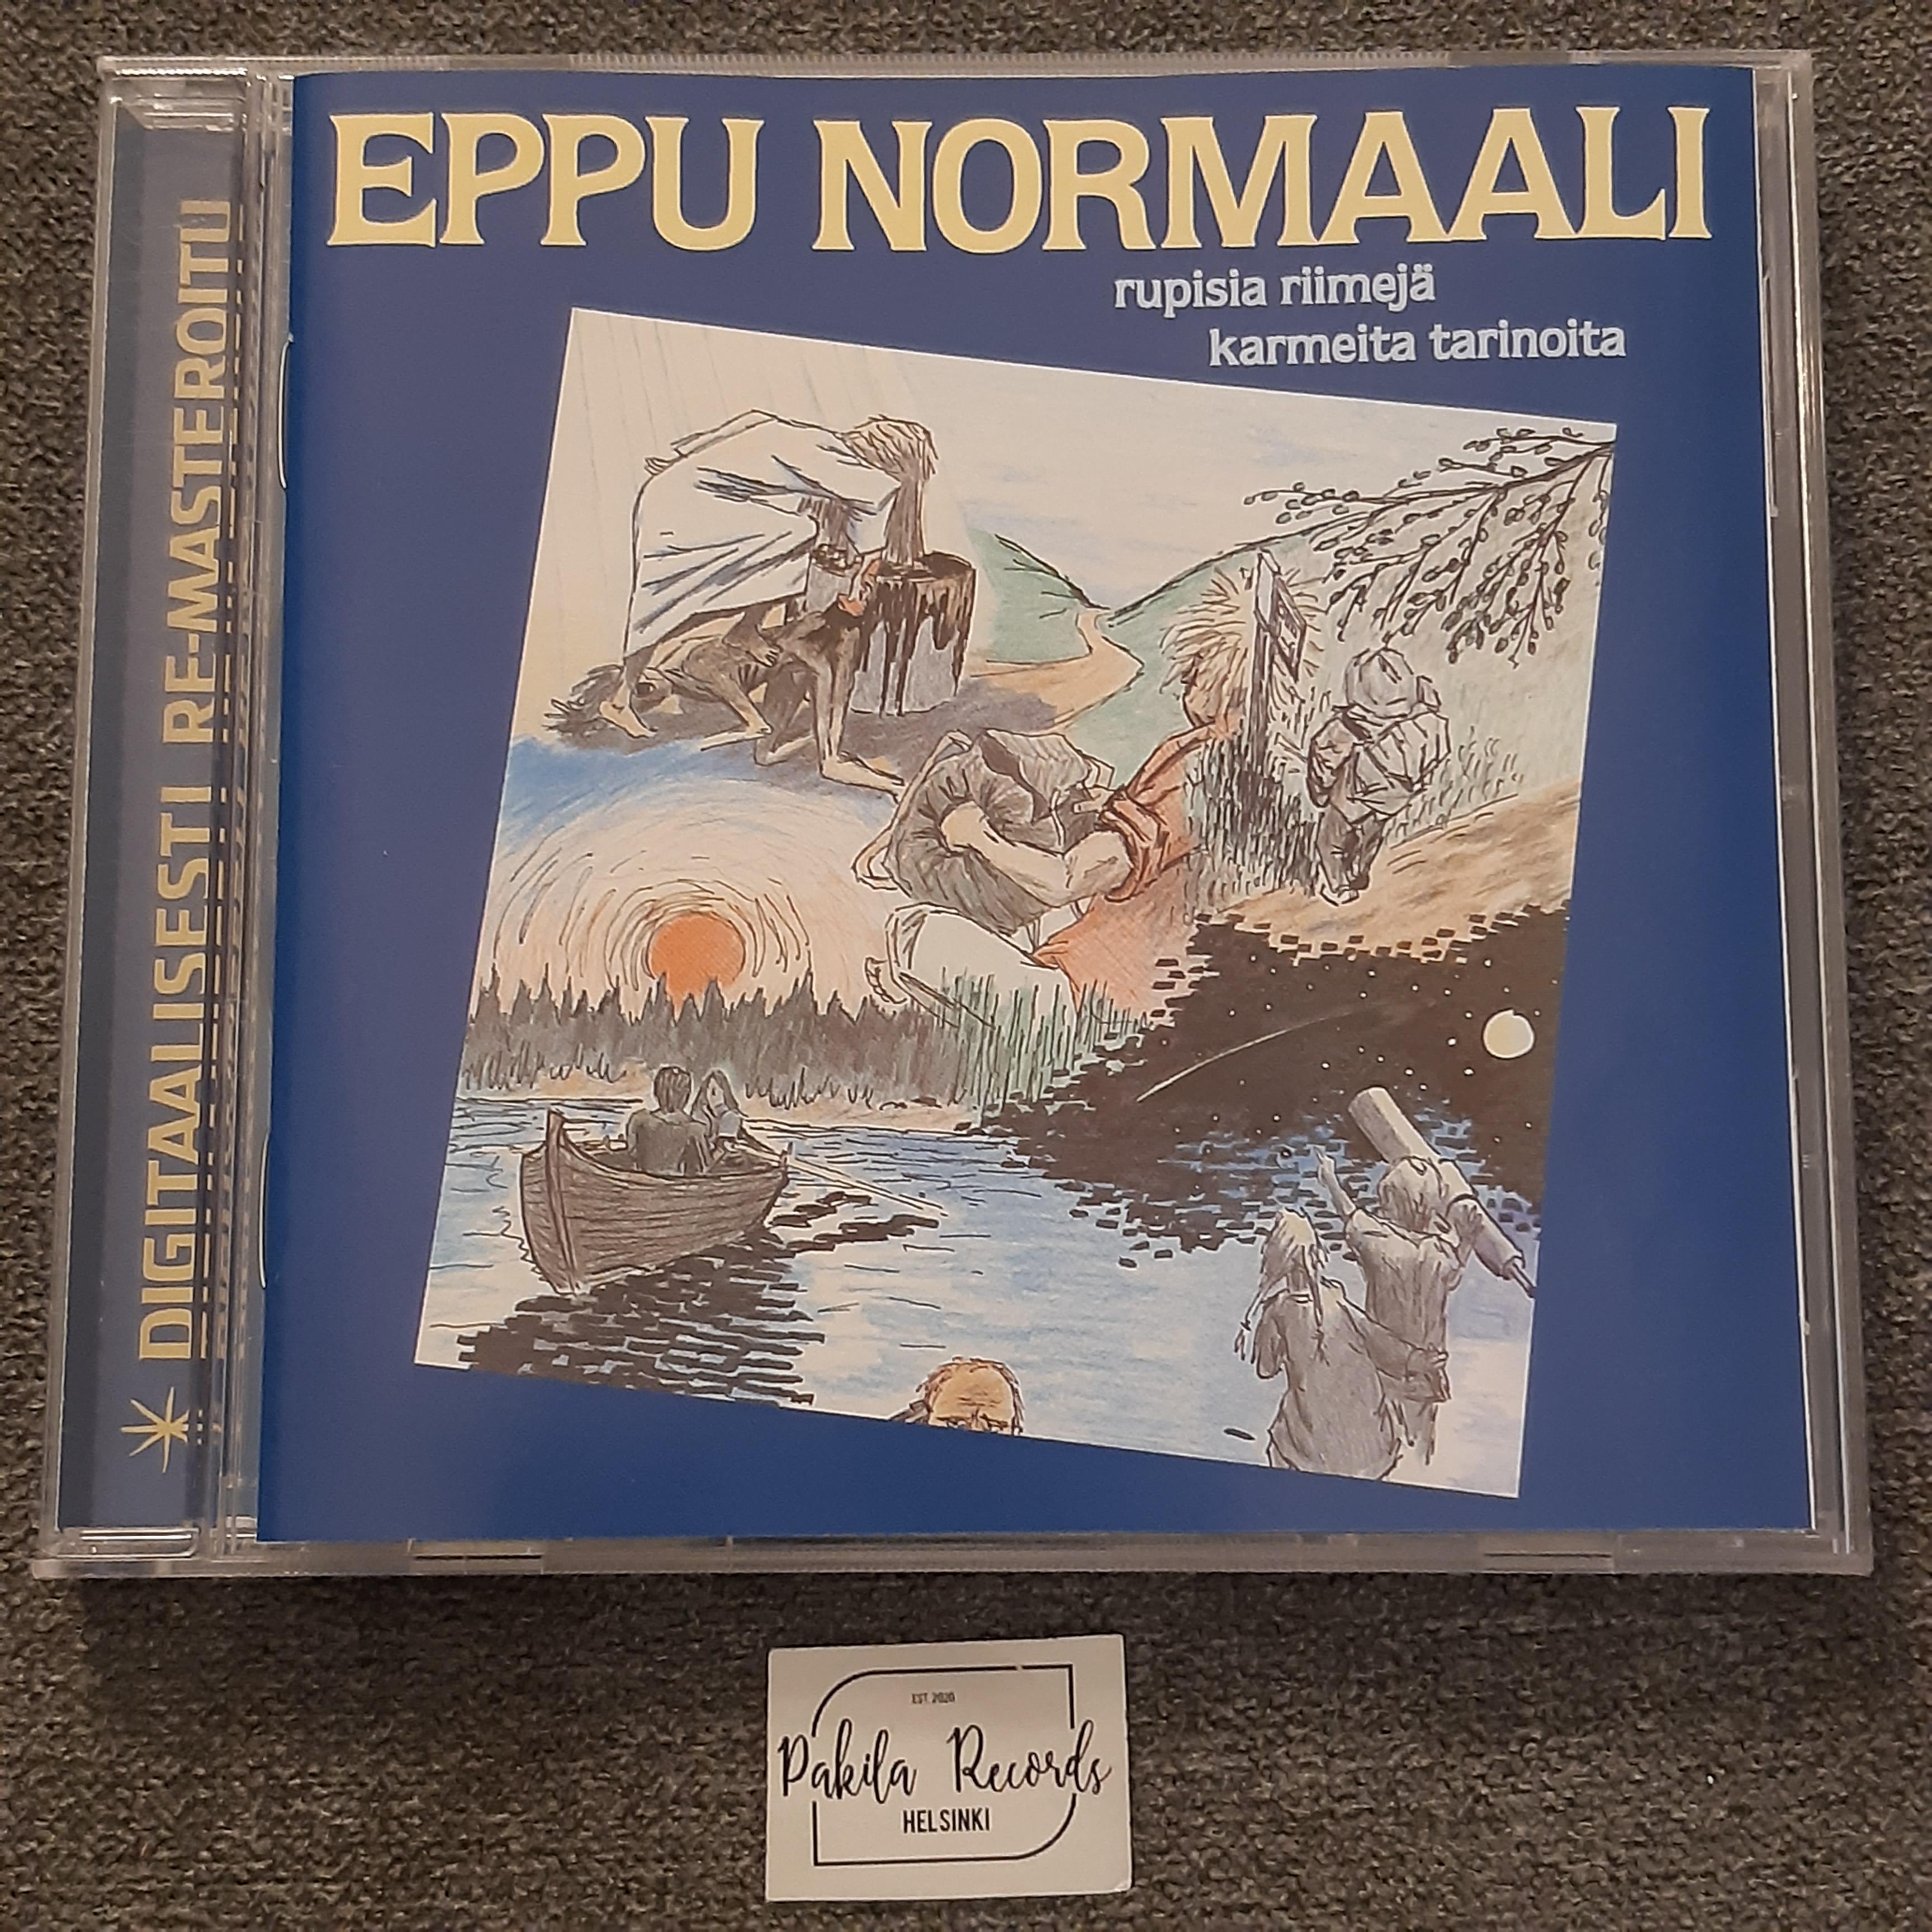 Eppu Normaali - Rupisia riimejä karmeita tarinoita - CD (käytetty)